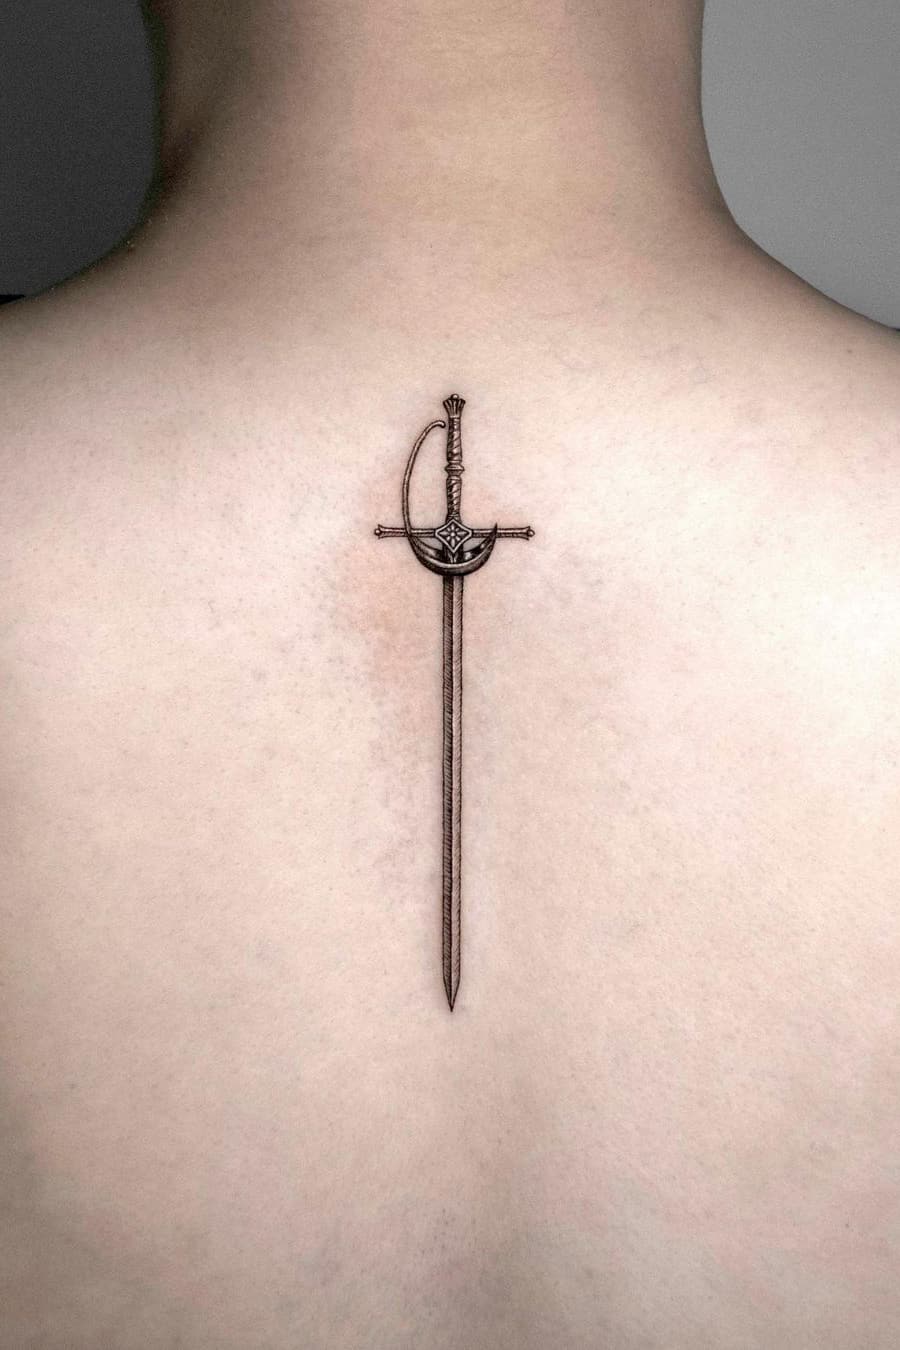 Realistic sword tattoo